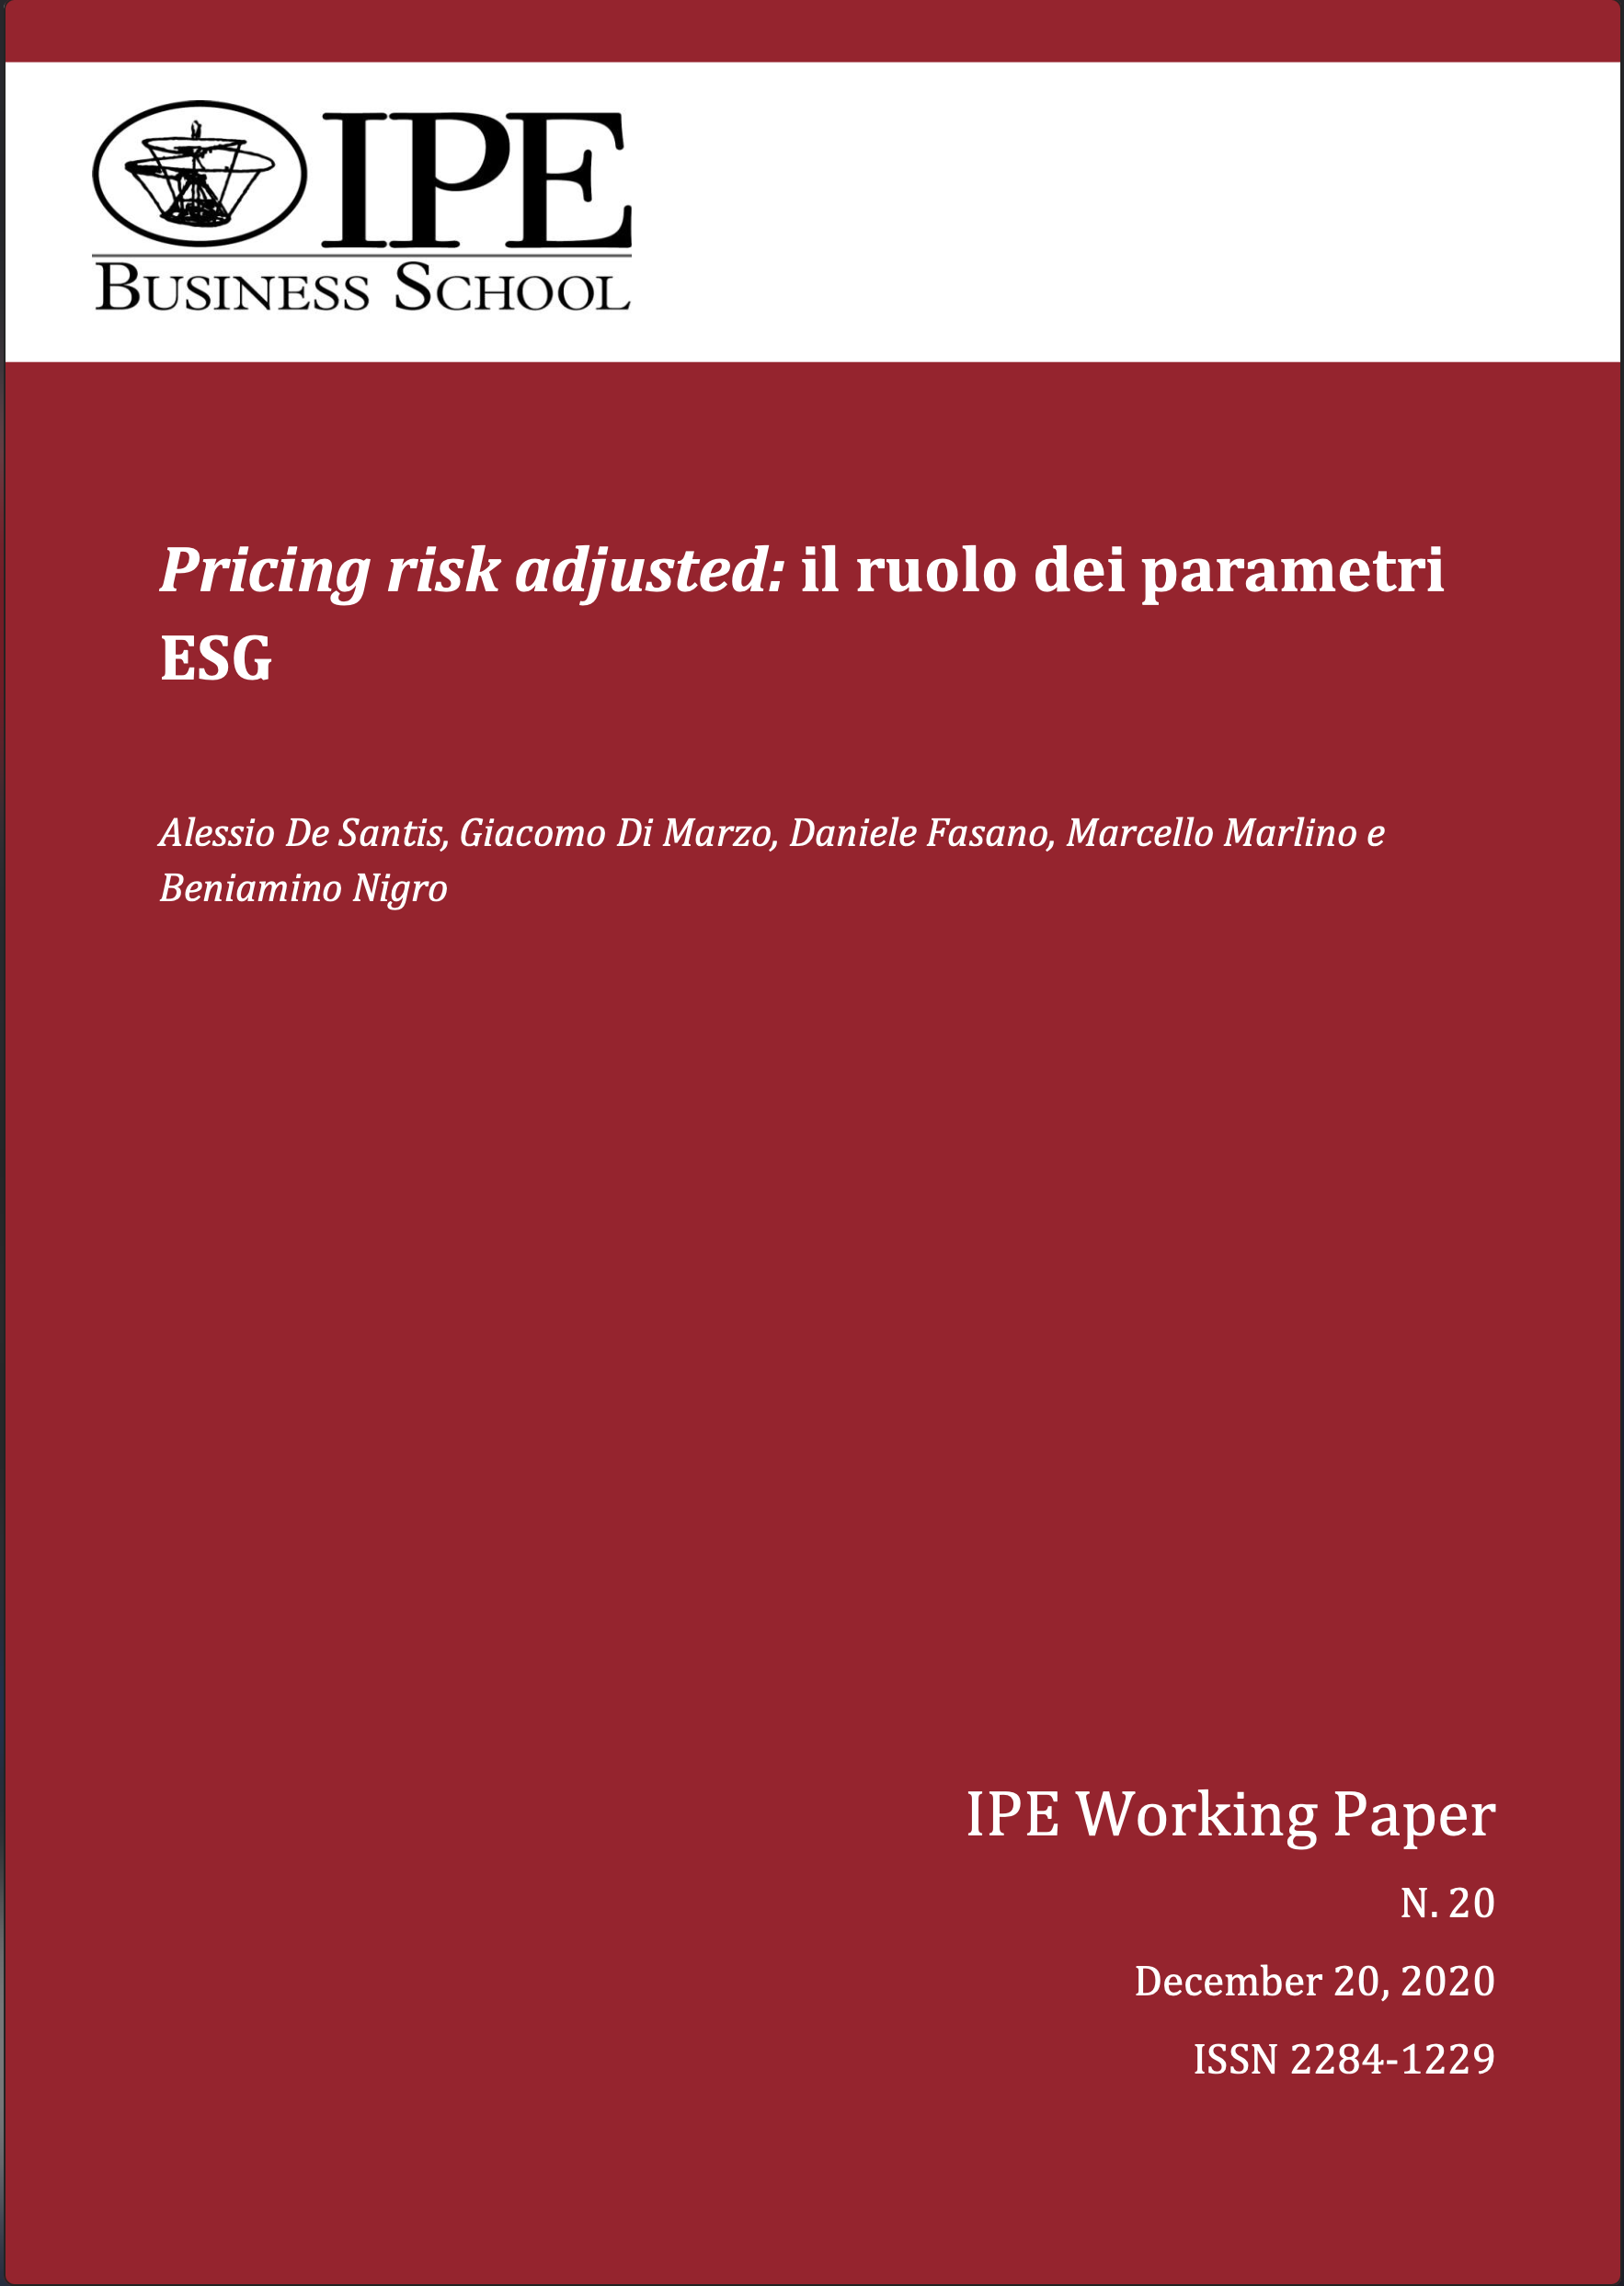 IPE Working Paper N.20/2020